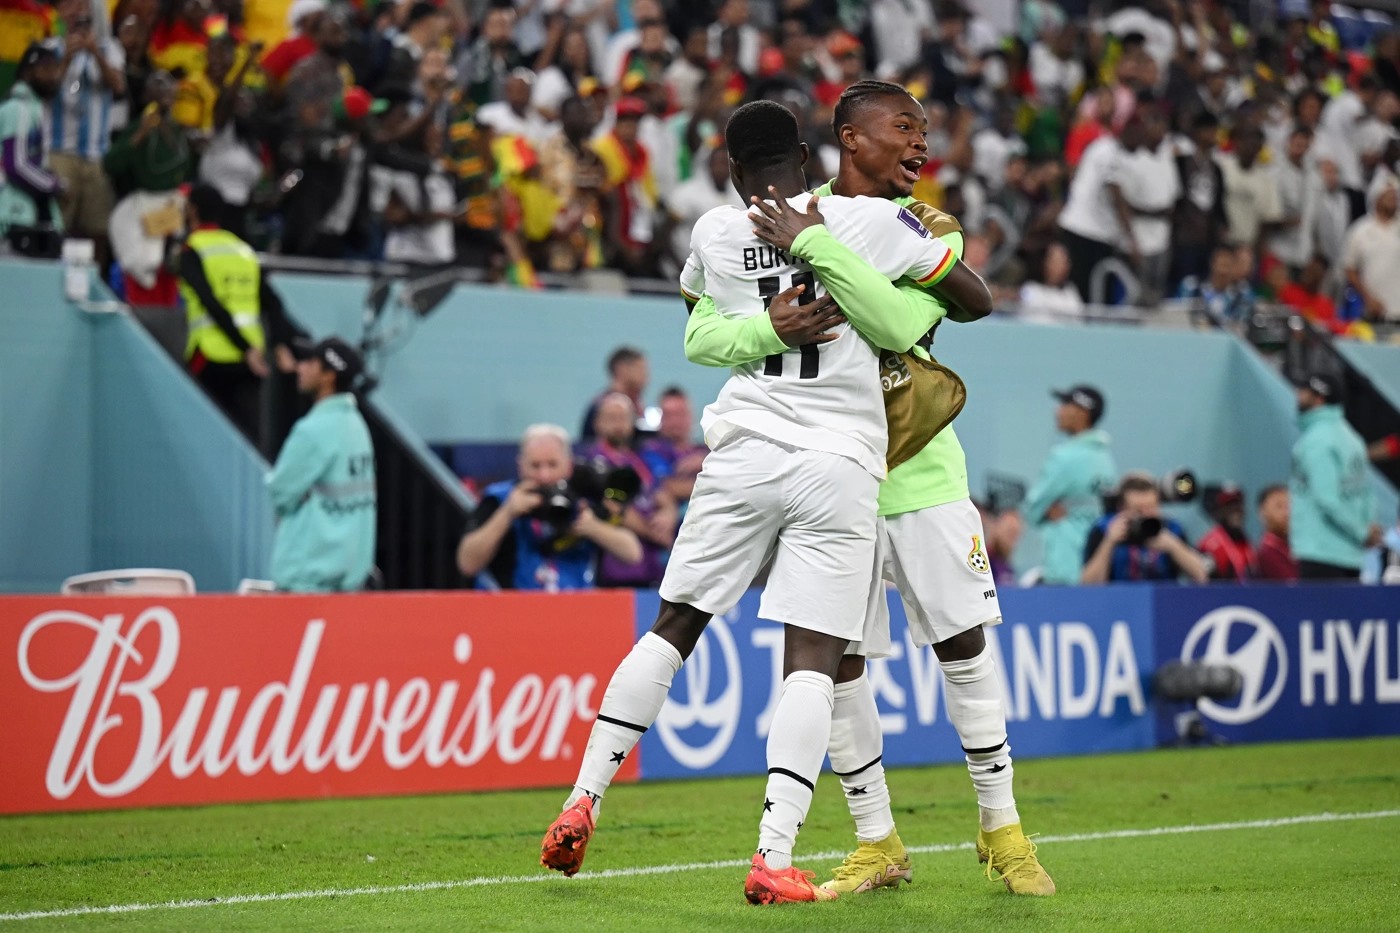 Tuyển Ghana chơi kiên cường trước Bồ Đào Nha nhưng vẫn nhận thất bại chung cuộc 2-3. Ảnh: FIFA